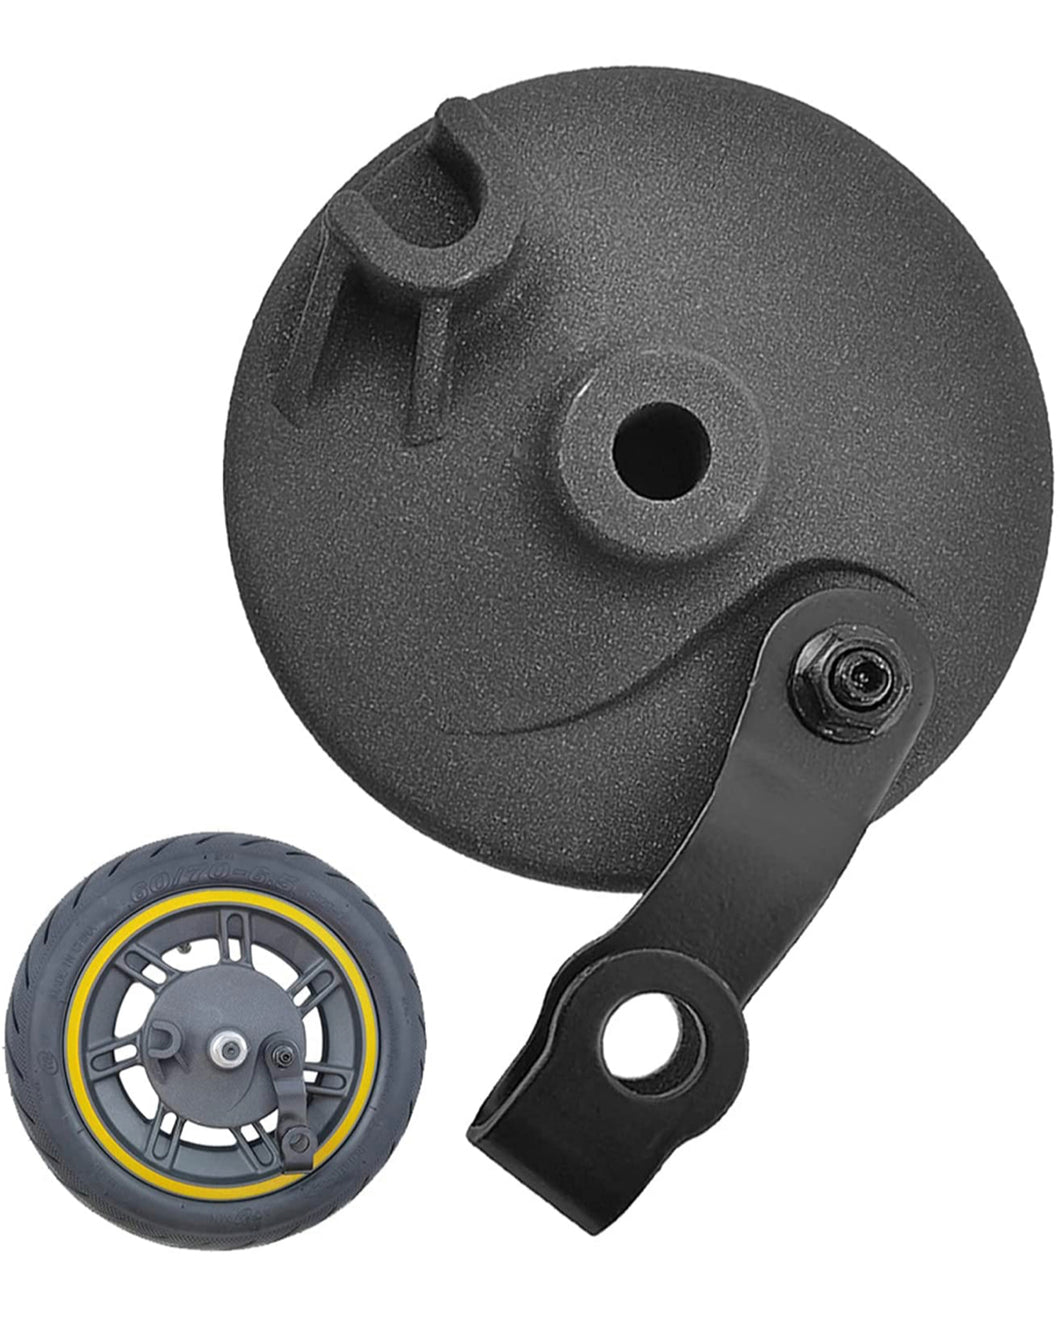 Ersatzteil: Vorderradbremse Vorderrad Radnabenbremse für Ninebot Max G30D E-Scooter Radbremsbeläge Trommelbremse Bremsdeckel